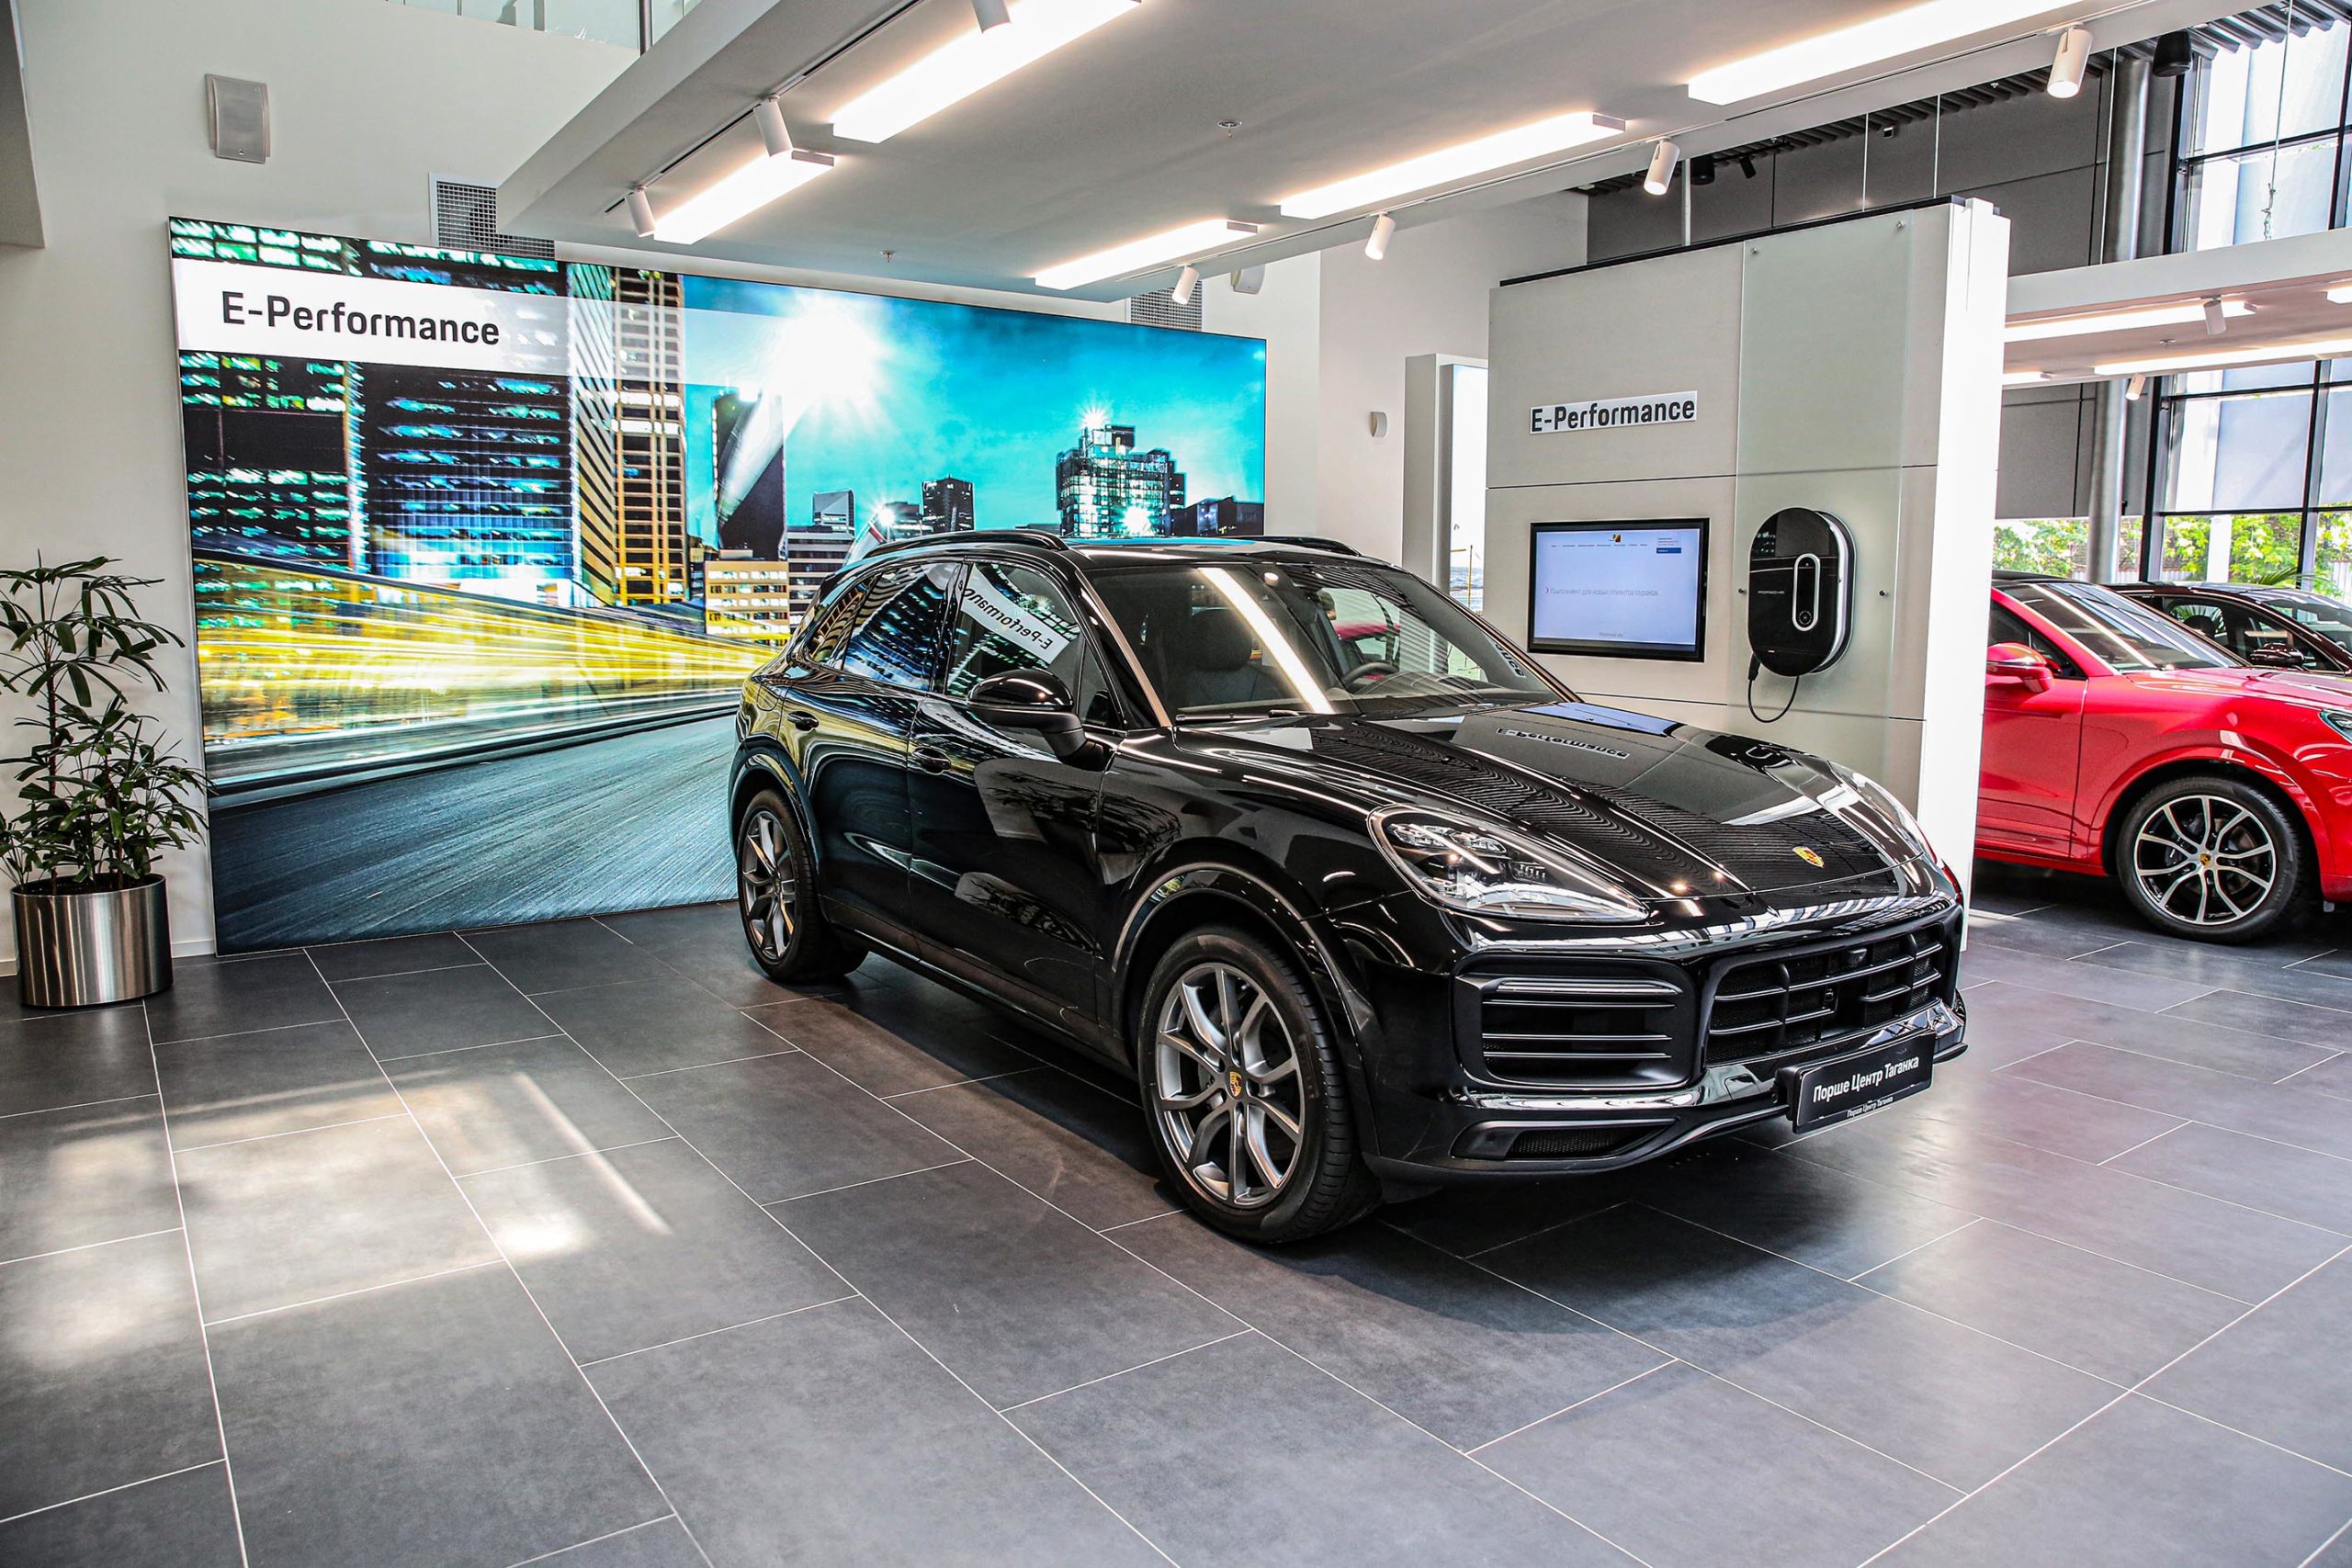 Порше Центр Таганка в новой концепции «Destination Porsche»